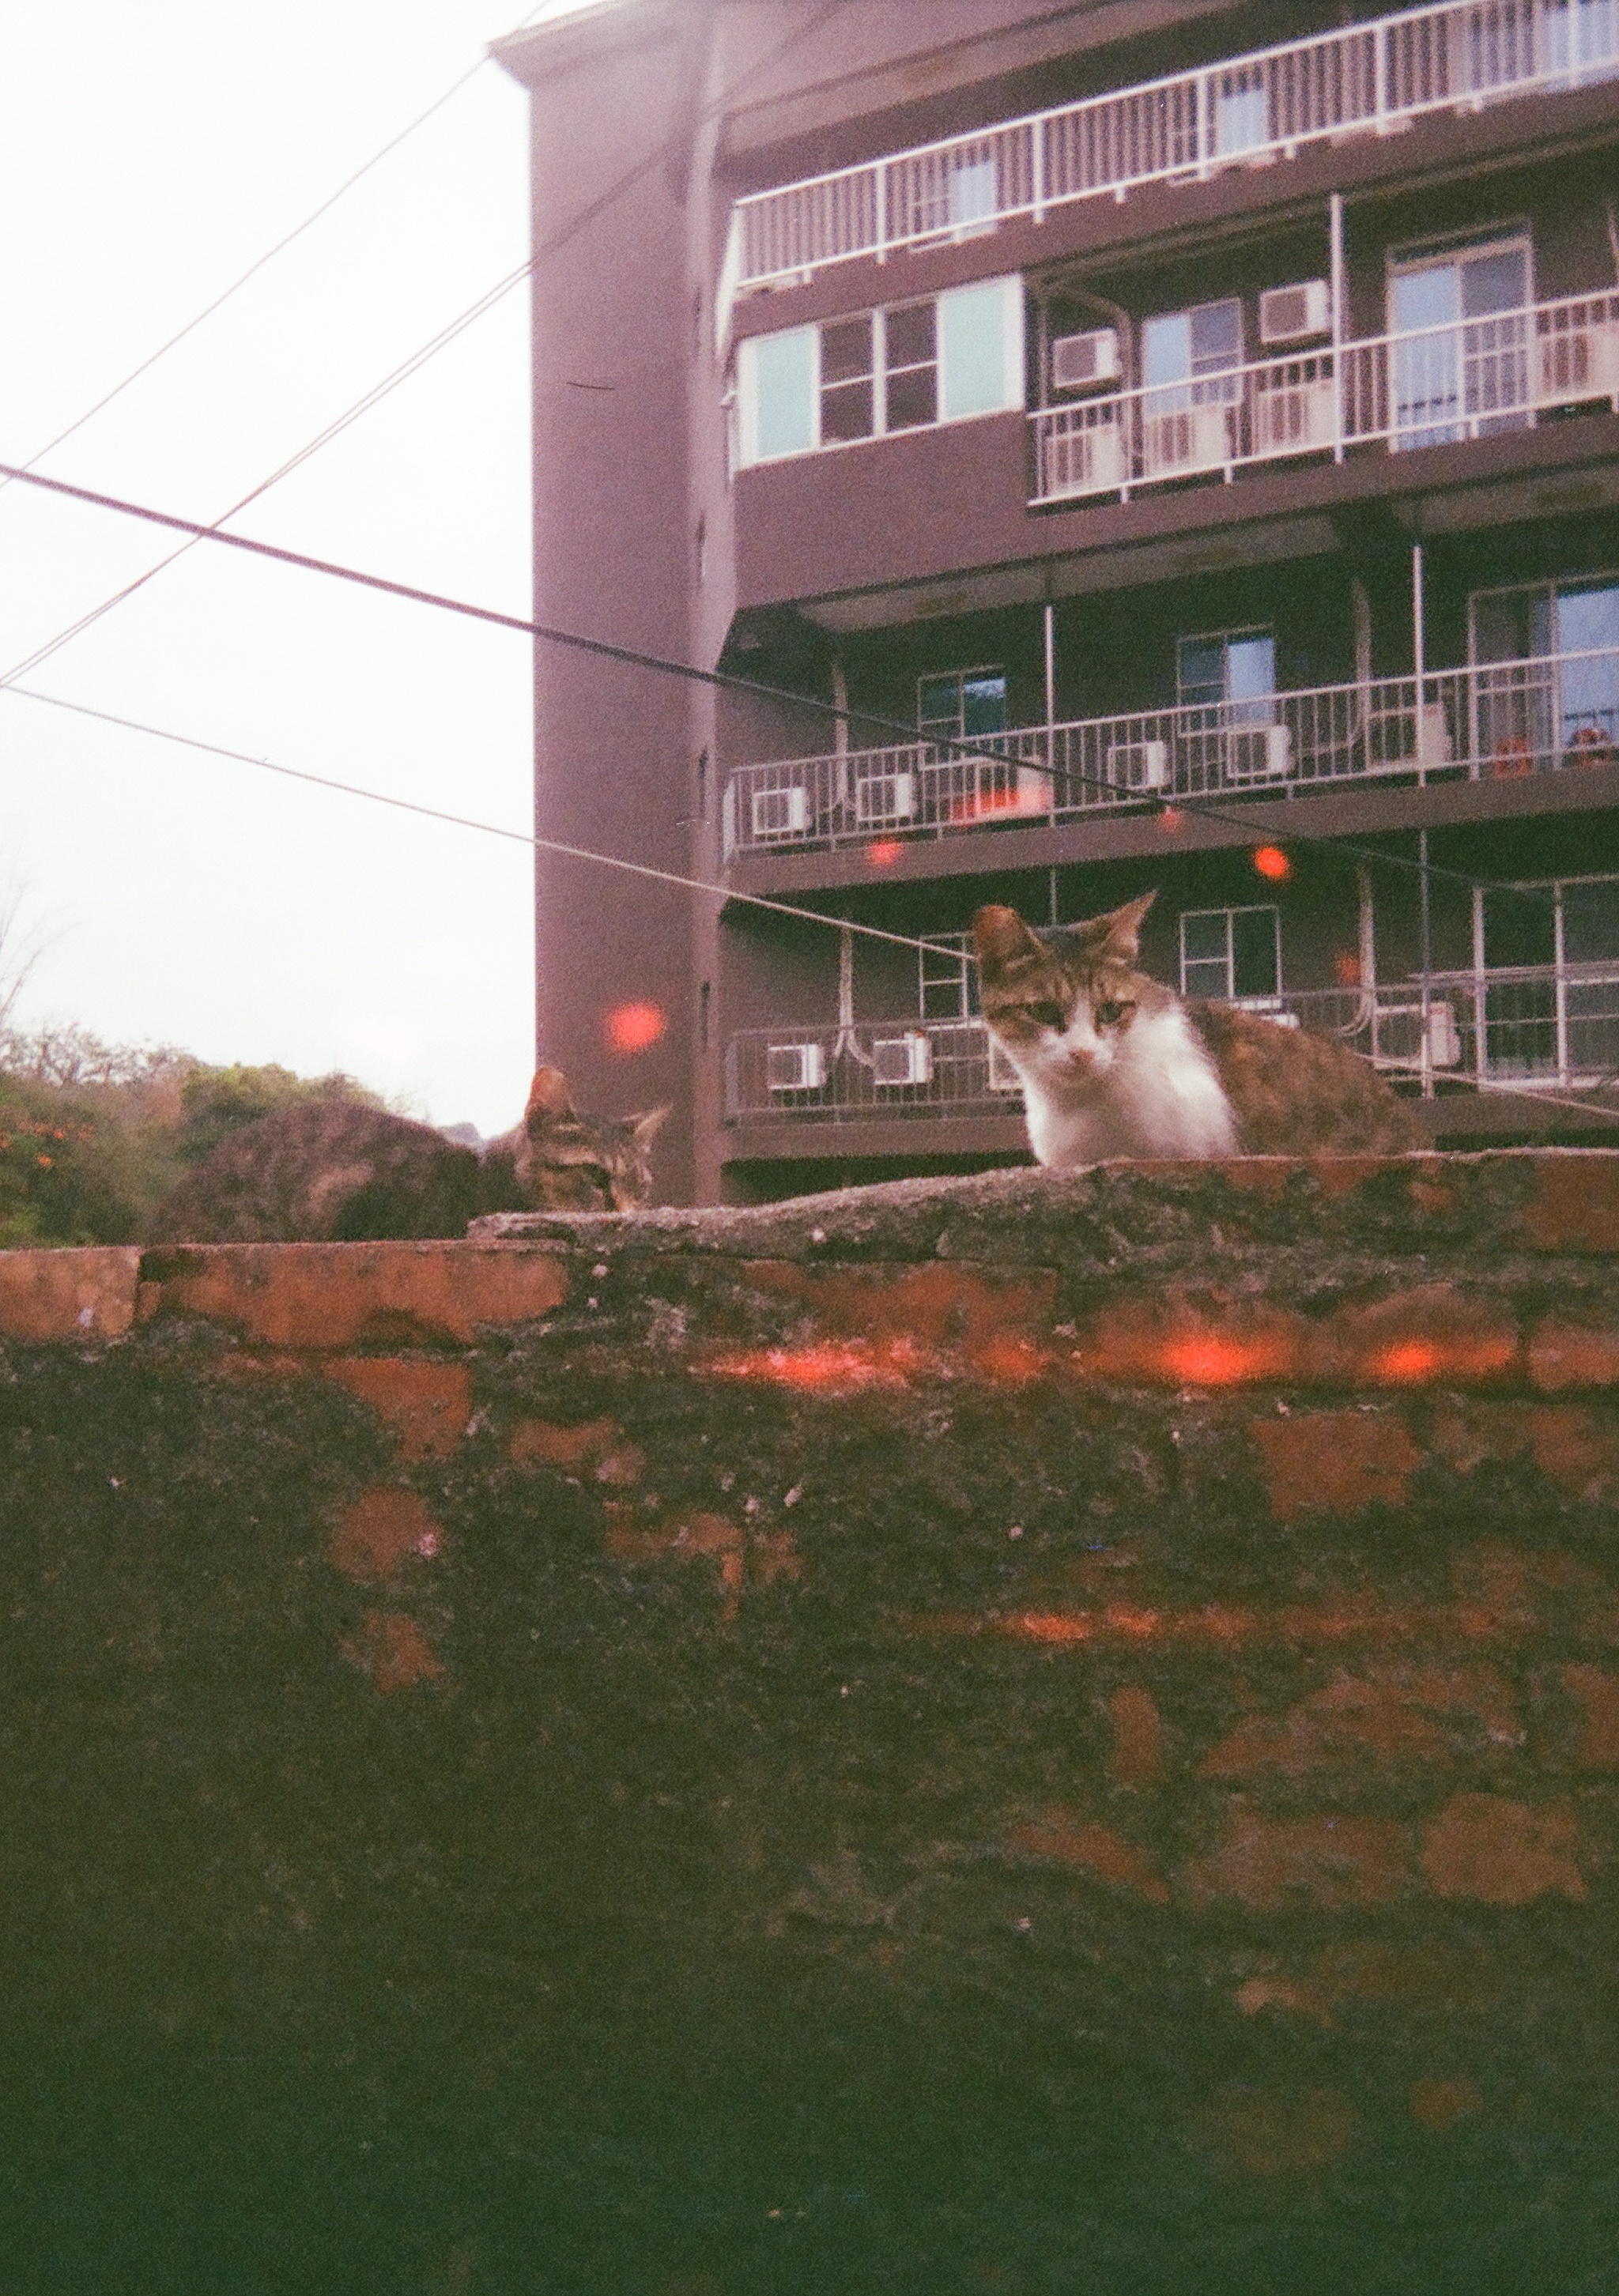 a cat on a brick wall